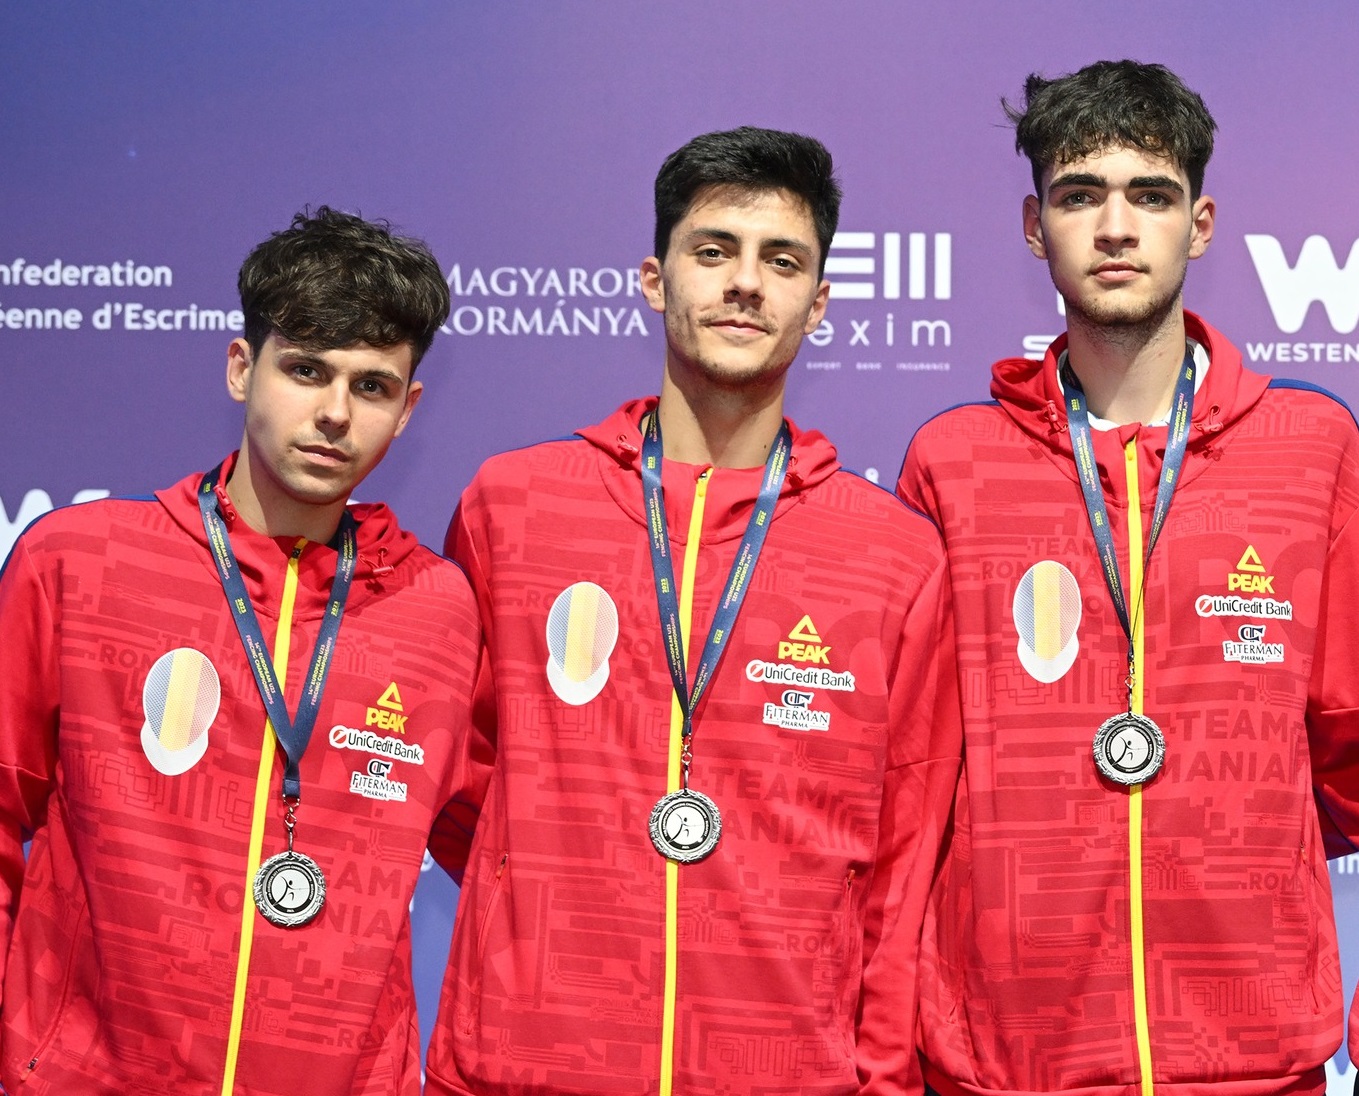 Echipa masculină de sabie a României a câştigat medalia de argint la Europenele U23 de la Budapesta